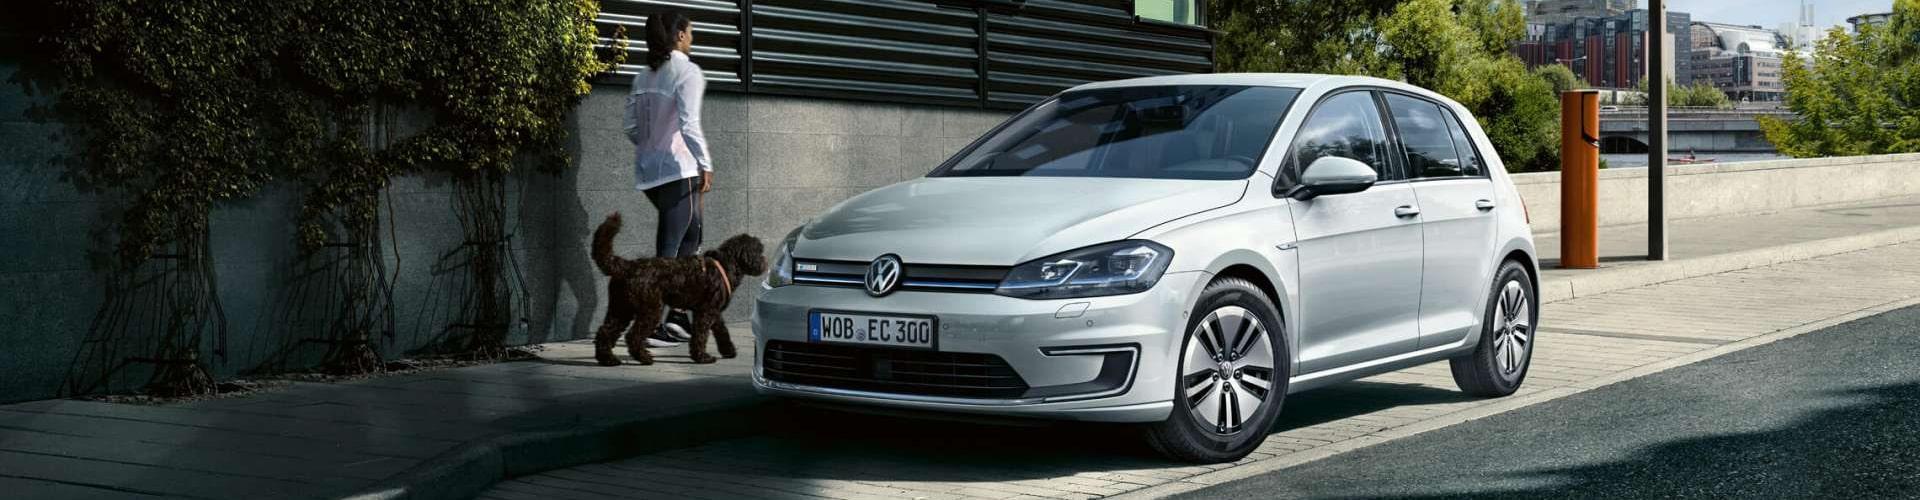 Renting Volkswagen Golf